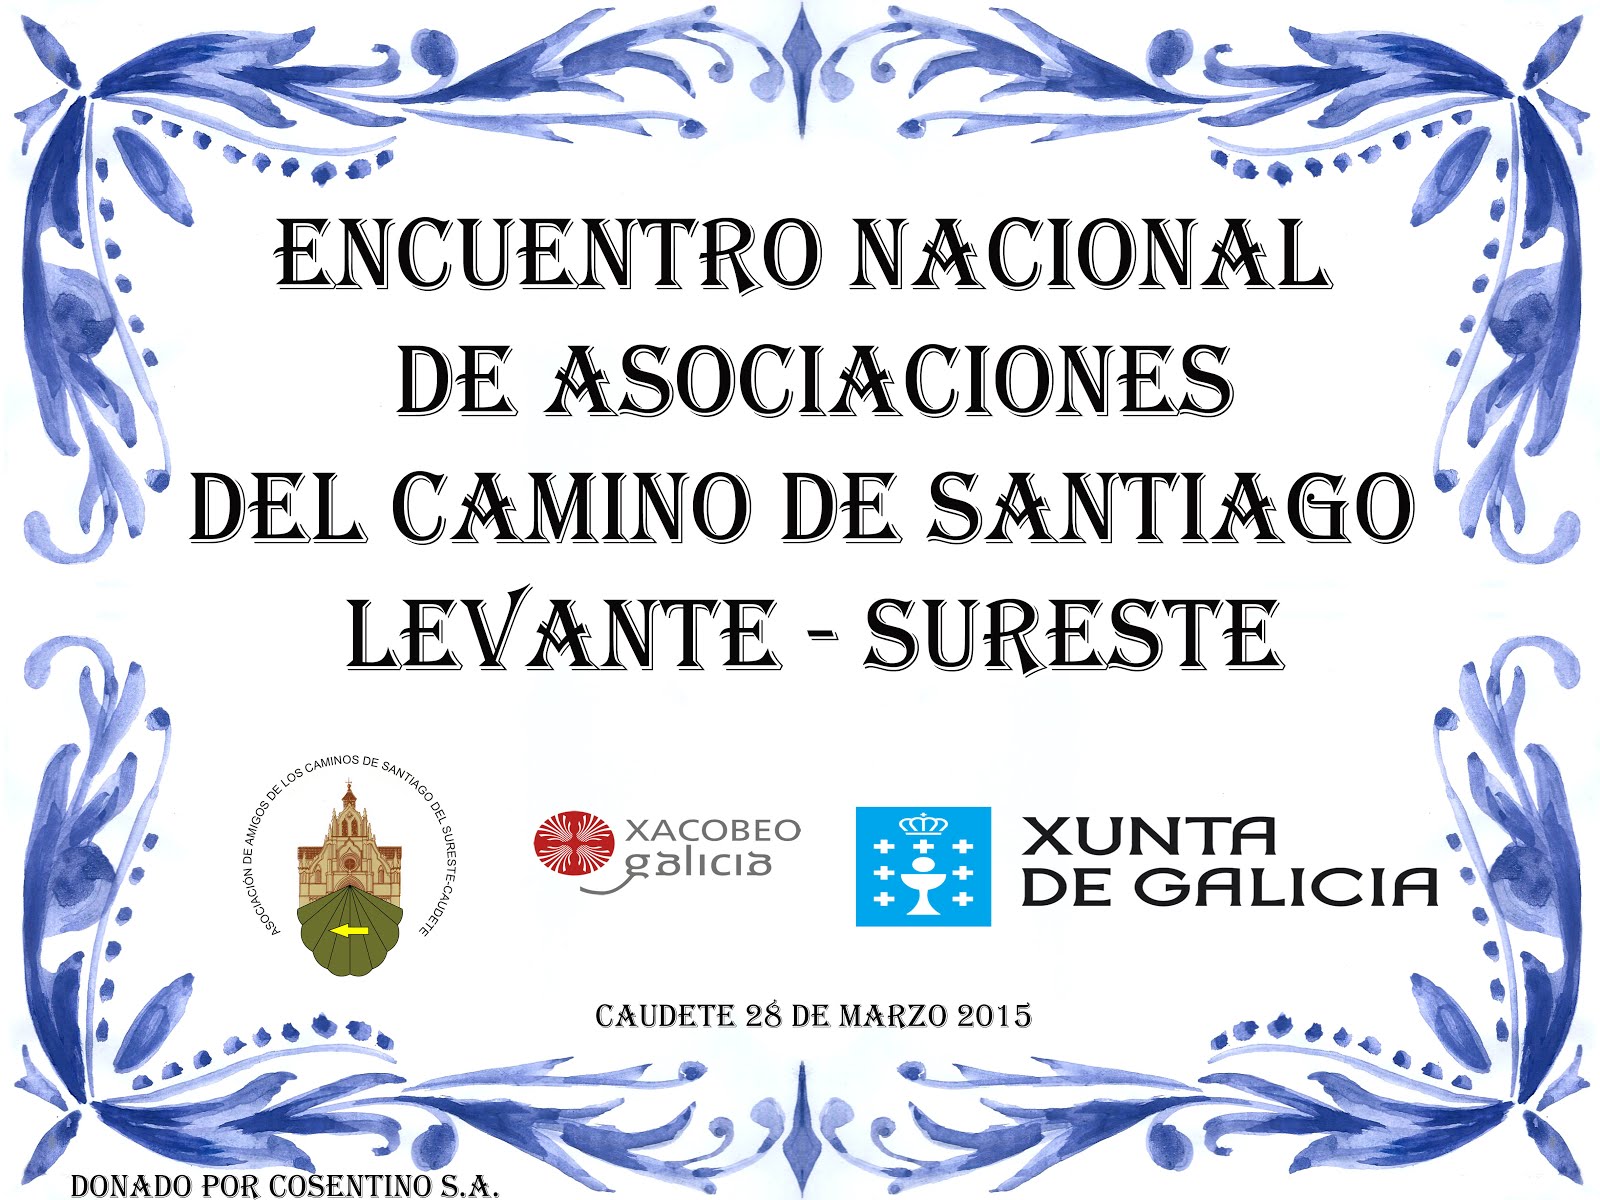 AZULEJOS INAUGURADOS EN EL ENCUENTRO NACIONAL DE ASOCIACIONES LEVANTE-SURESTE